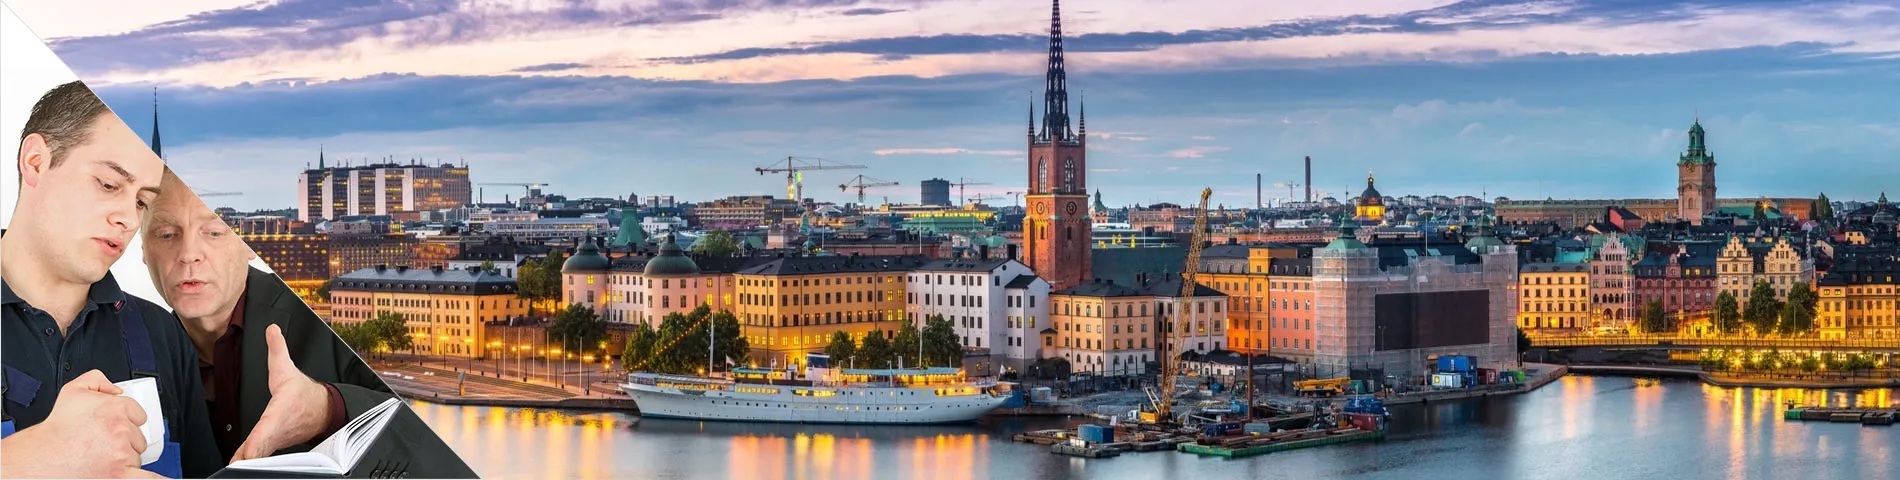 Stoccolma - Lezioni Individuali